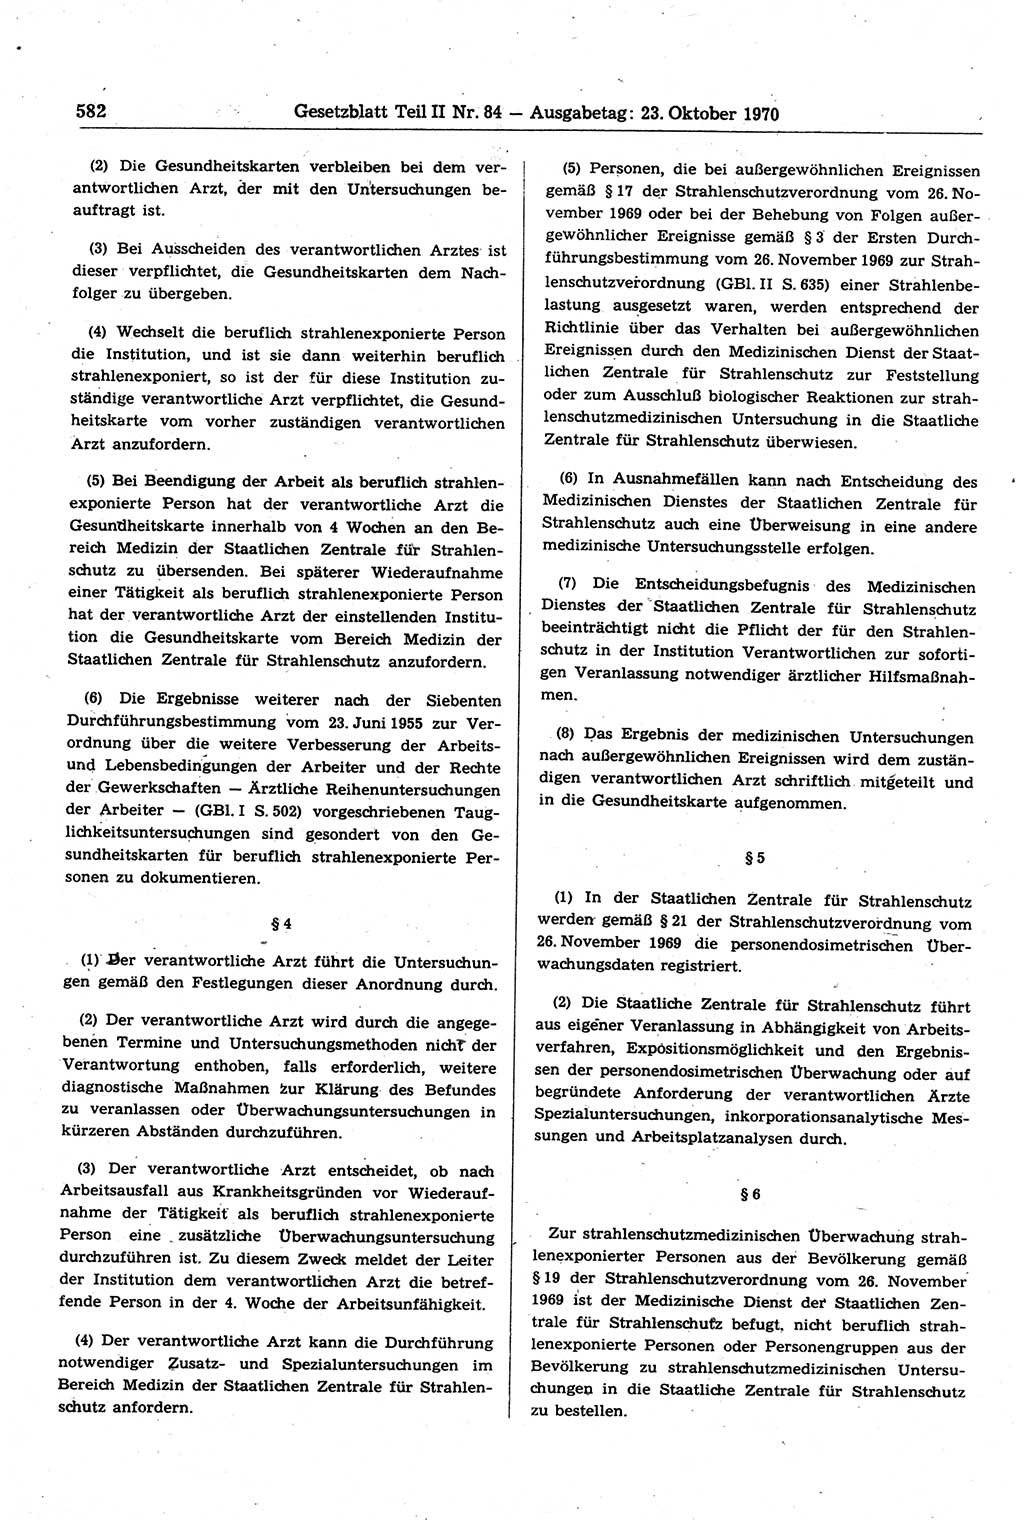 Gesetzblatt (GBl.) der Deutschen Demokratischen Republik (DDR) Teil ⅠⅠ 1970, Seite 582 (GBl. DDR ⅠⅠ 1970, S. 582)